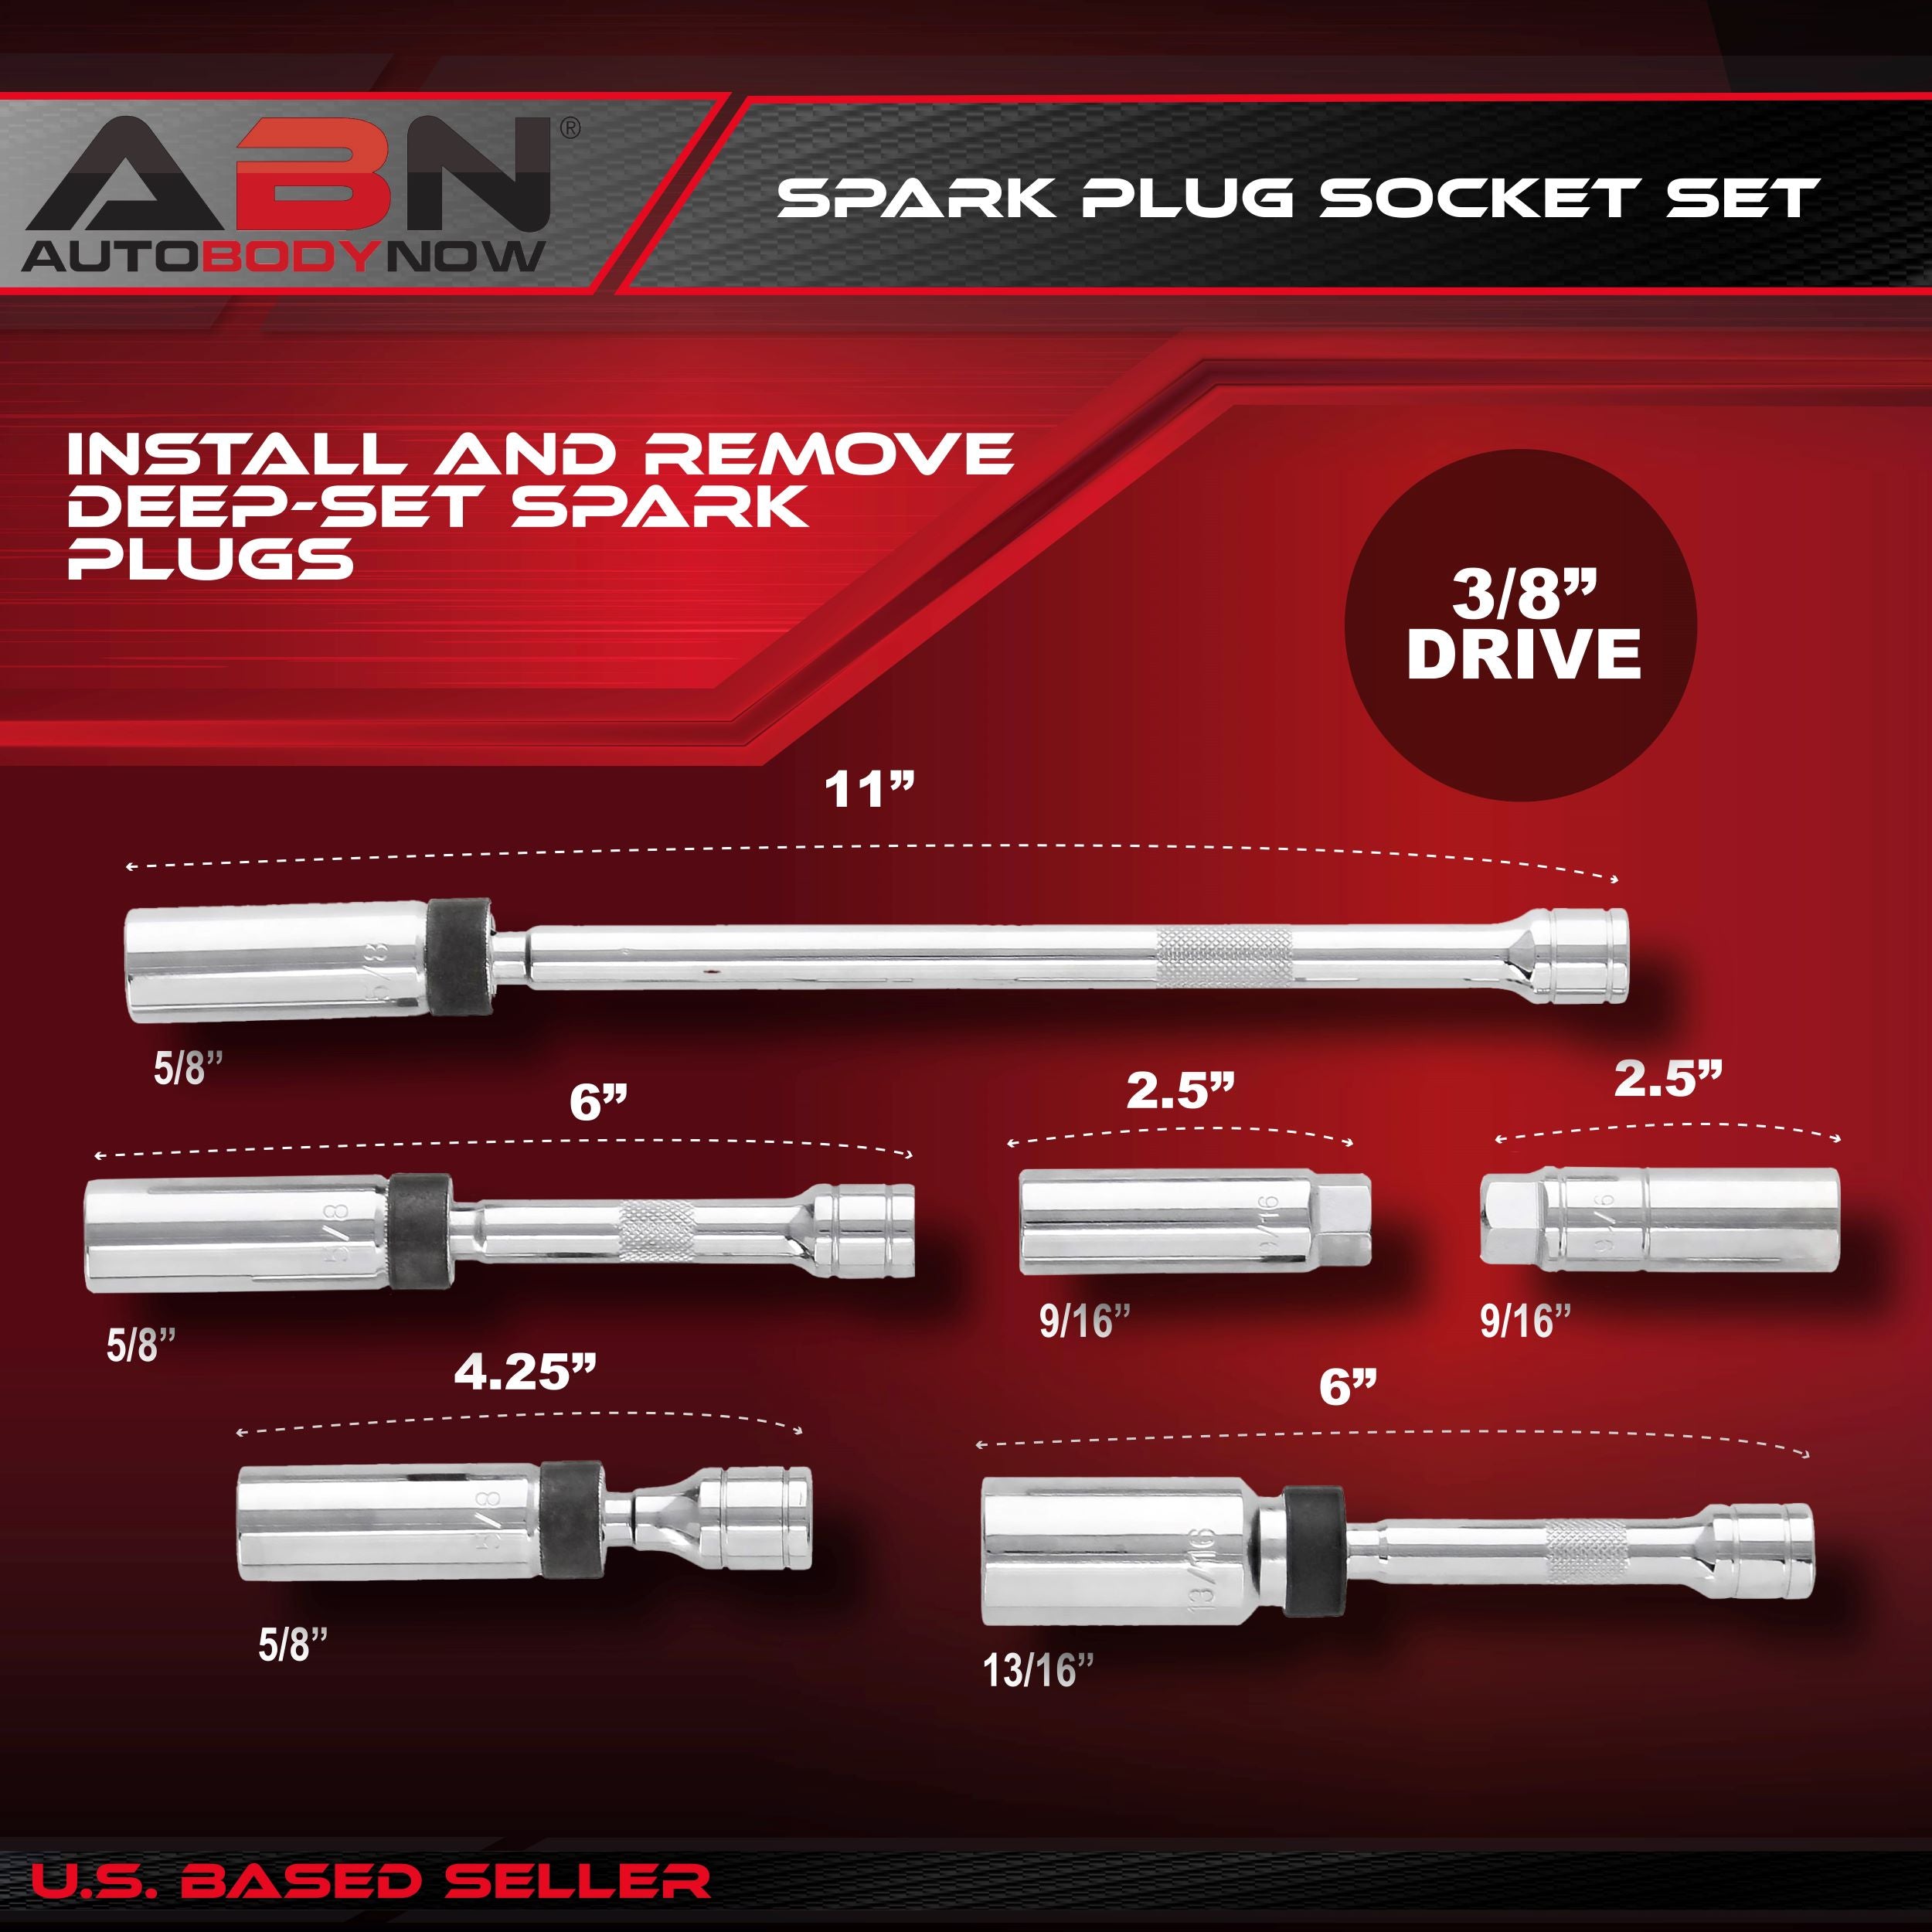 Spark Plug Socket Set – 6 Piece 3/8” Inch Drive Magnetic Socket Set